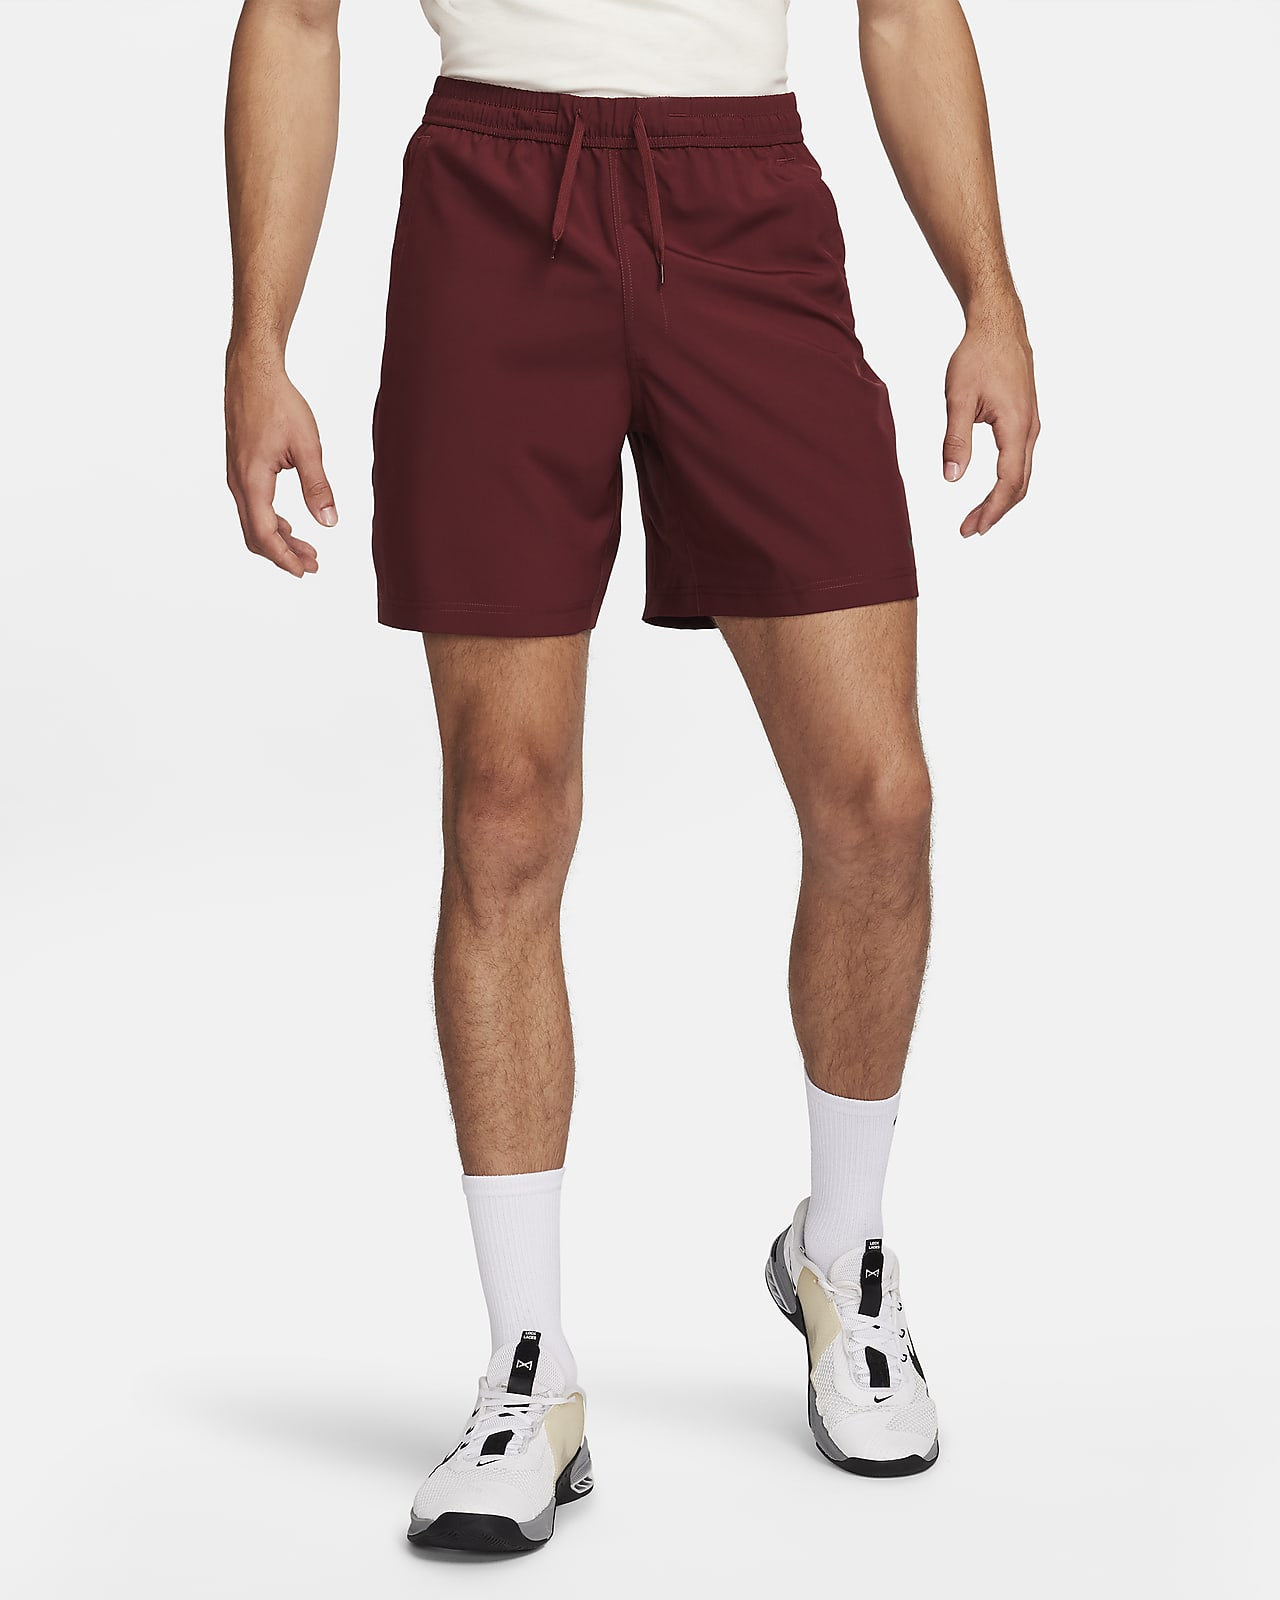 Alsidige Nike Form Dri-FIT-shorts (18 cm) uden for til mænd